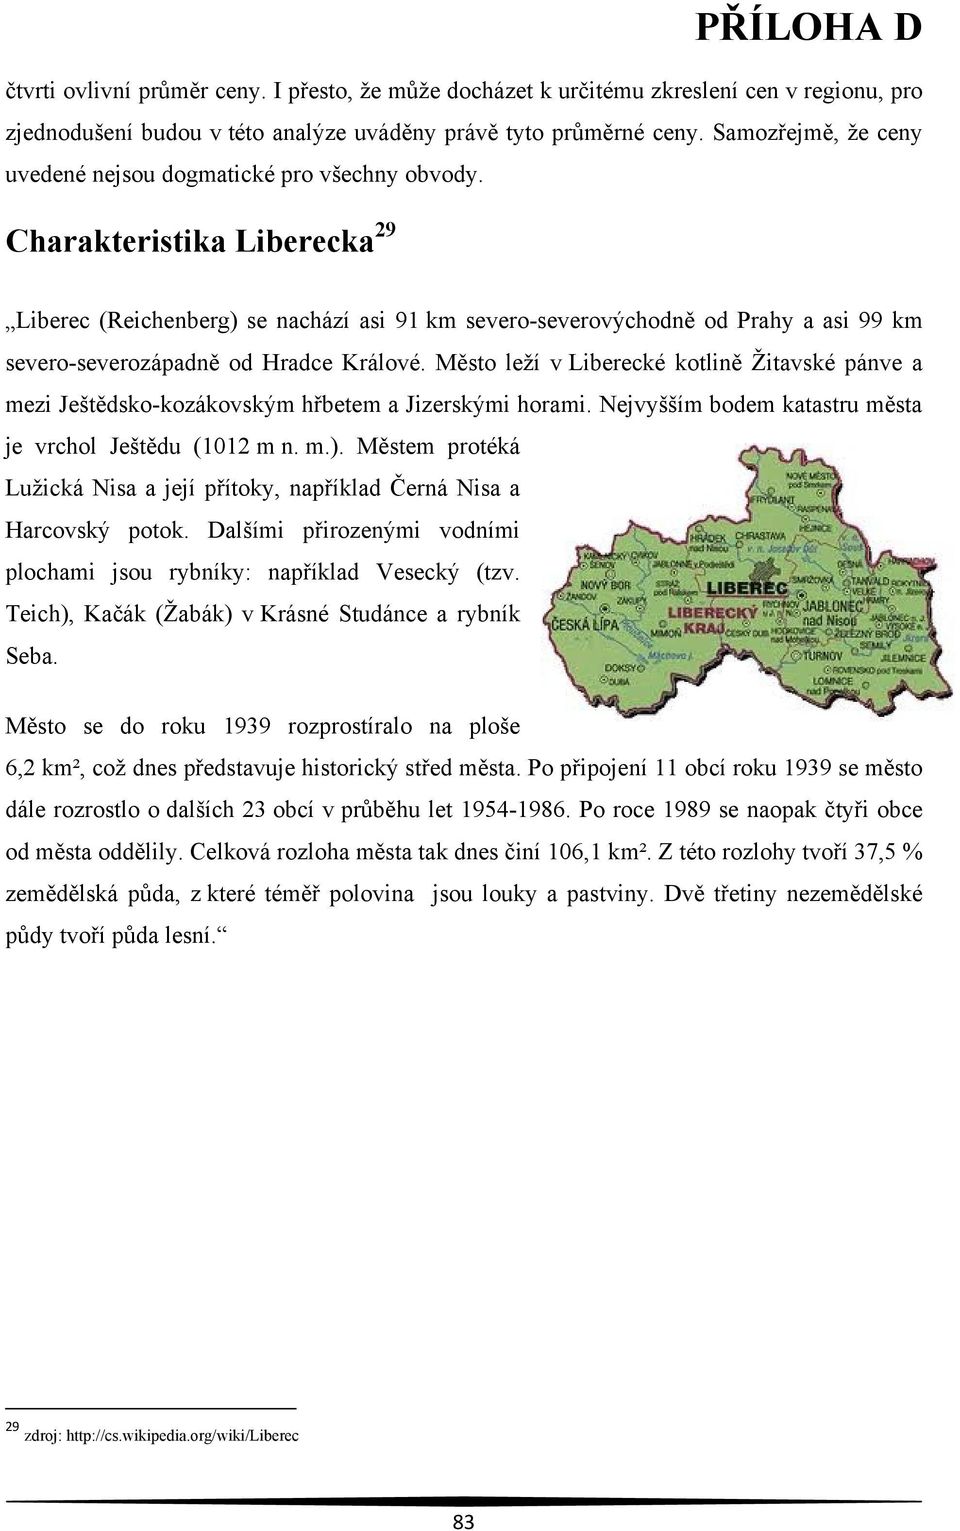 Charakteristika Liberecka 29 Liberec (Reichenberg) se nachází asi 91 km severo-severovýchodně od Prahy a asi 99 km severo-severozápadně od Hradce Králové.